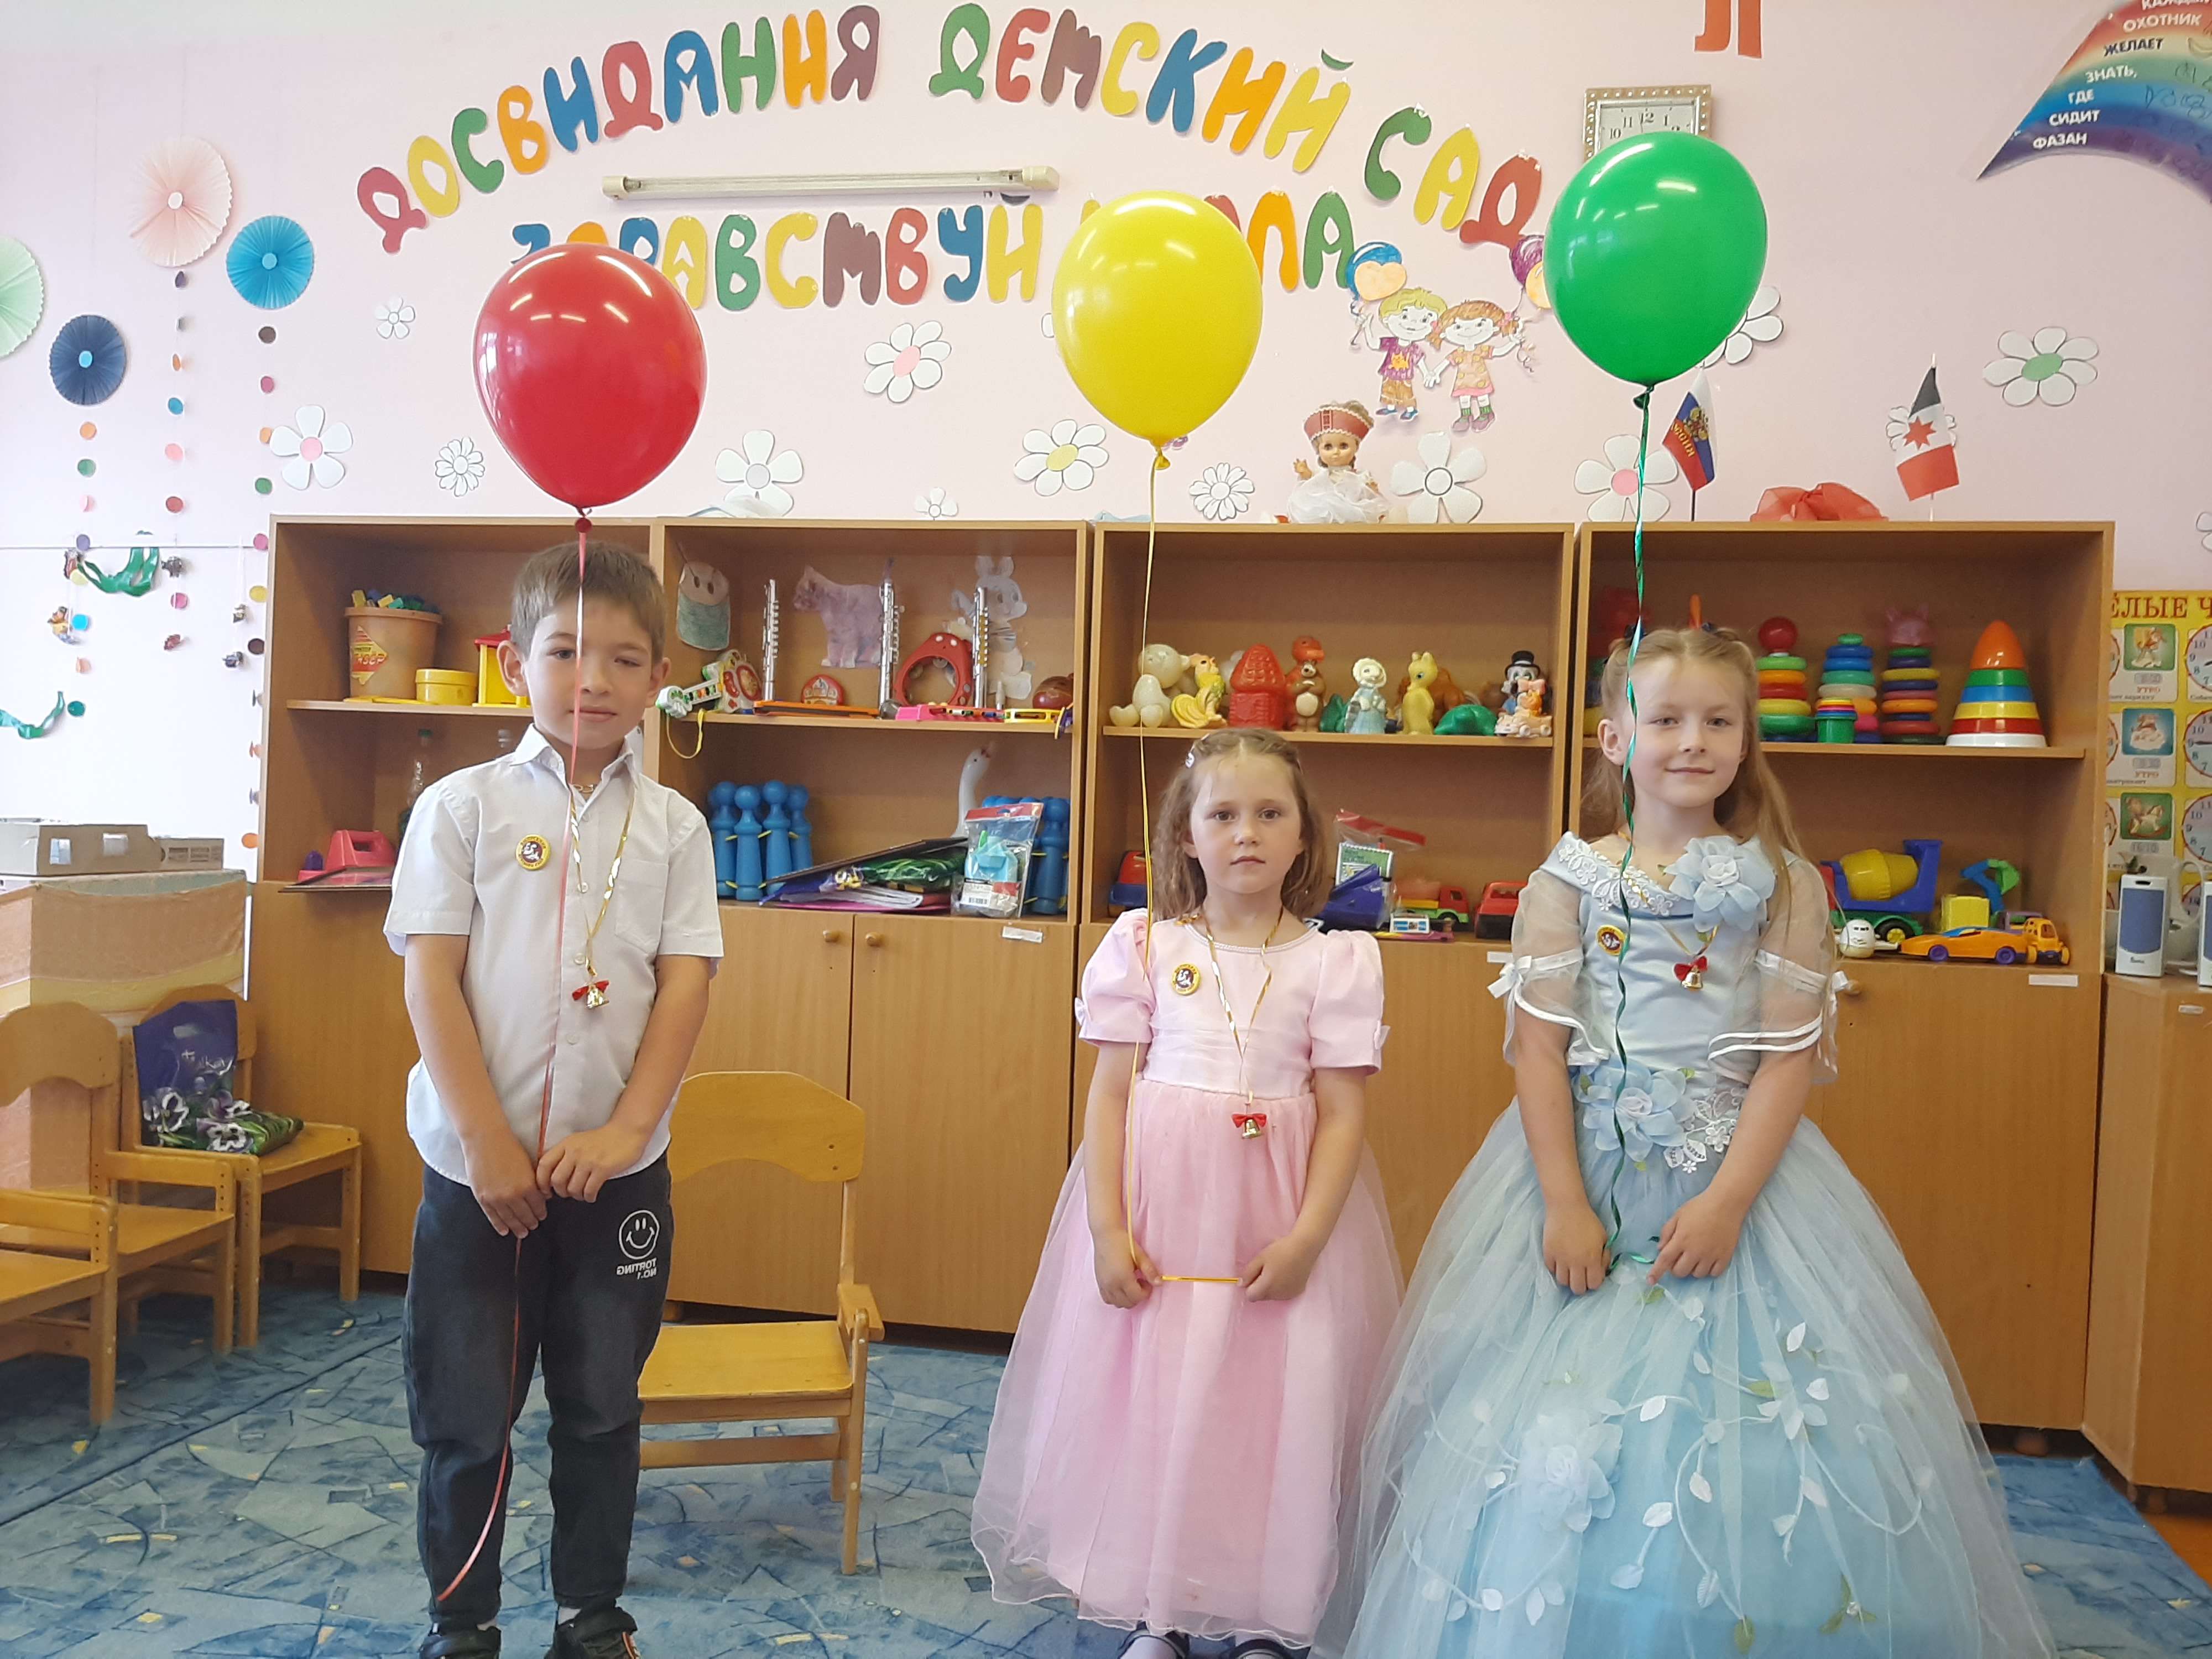 31 мая в дошкольной группе при МКОУ «Барановская СОШ» прошел прекрасный праздник, добрый, душевный «Выпуск в школу».